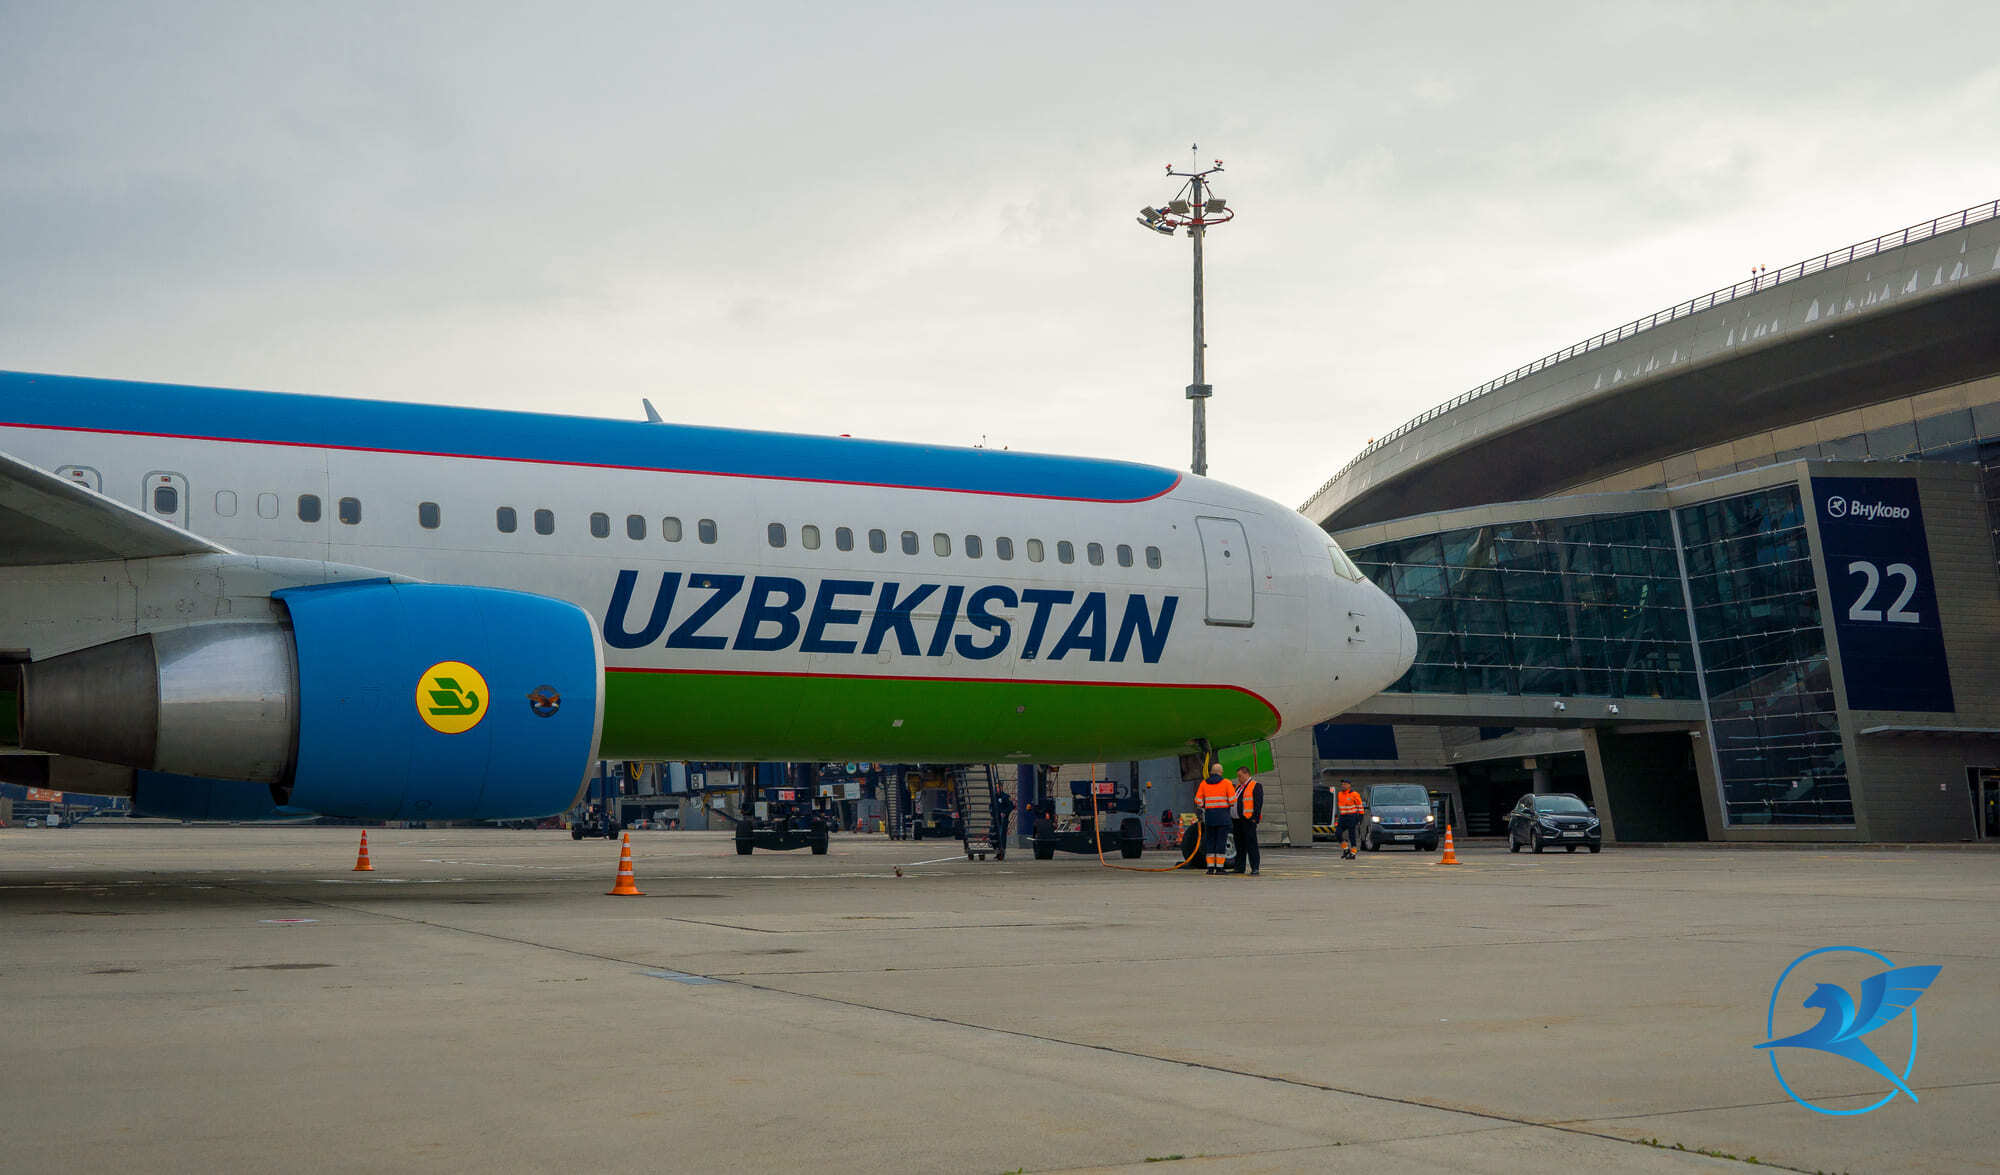 Uzbekistan авиакомпания. Uzbekistan Airways. Tashkent Airport.